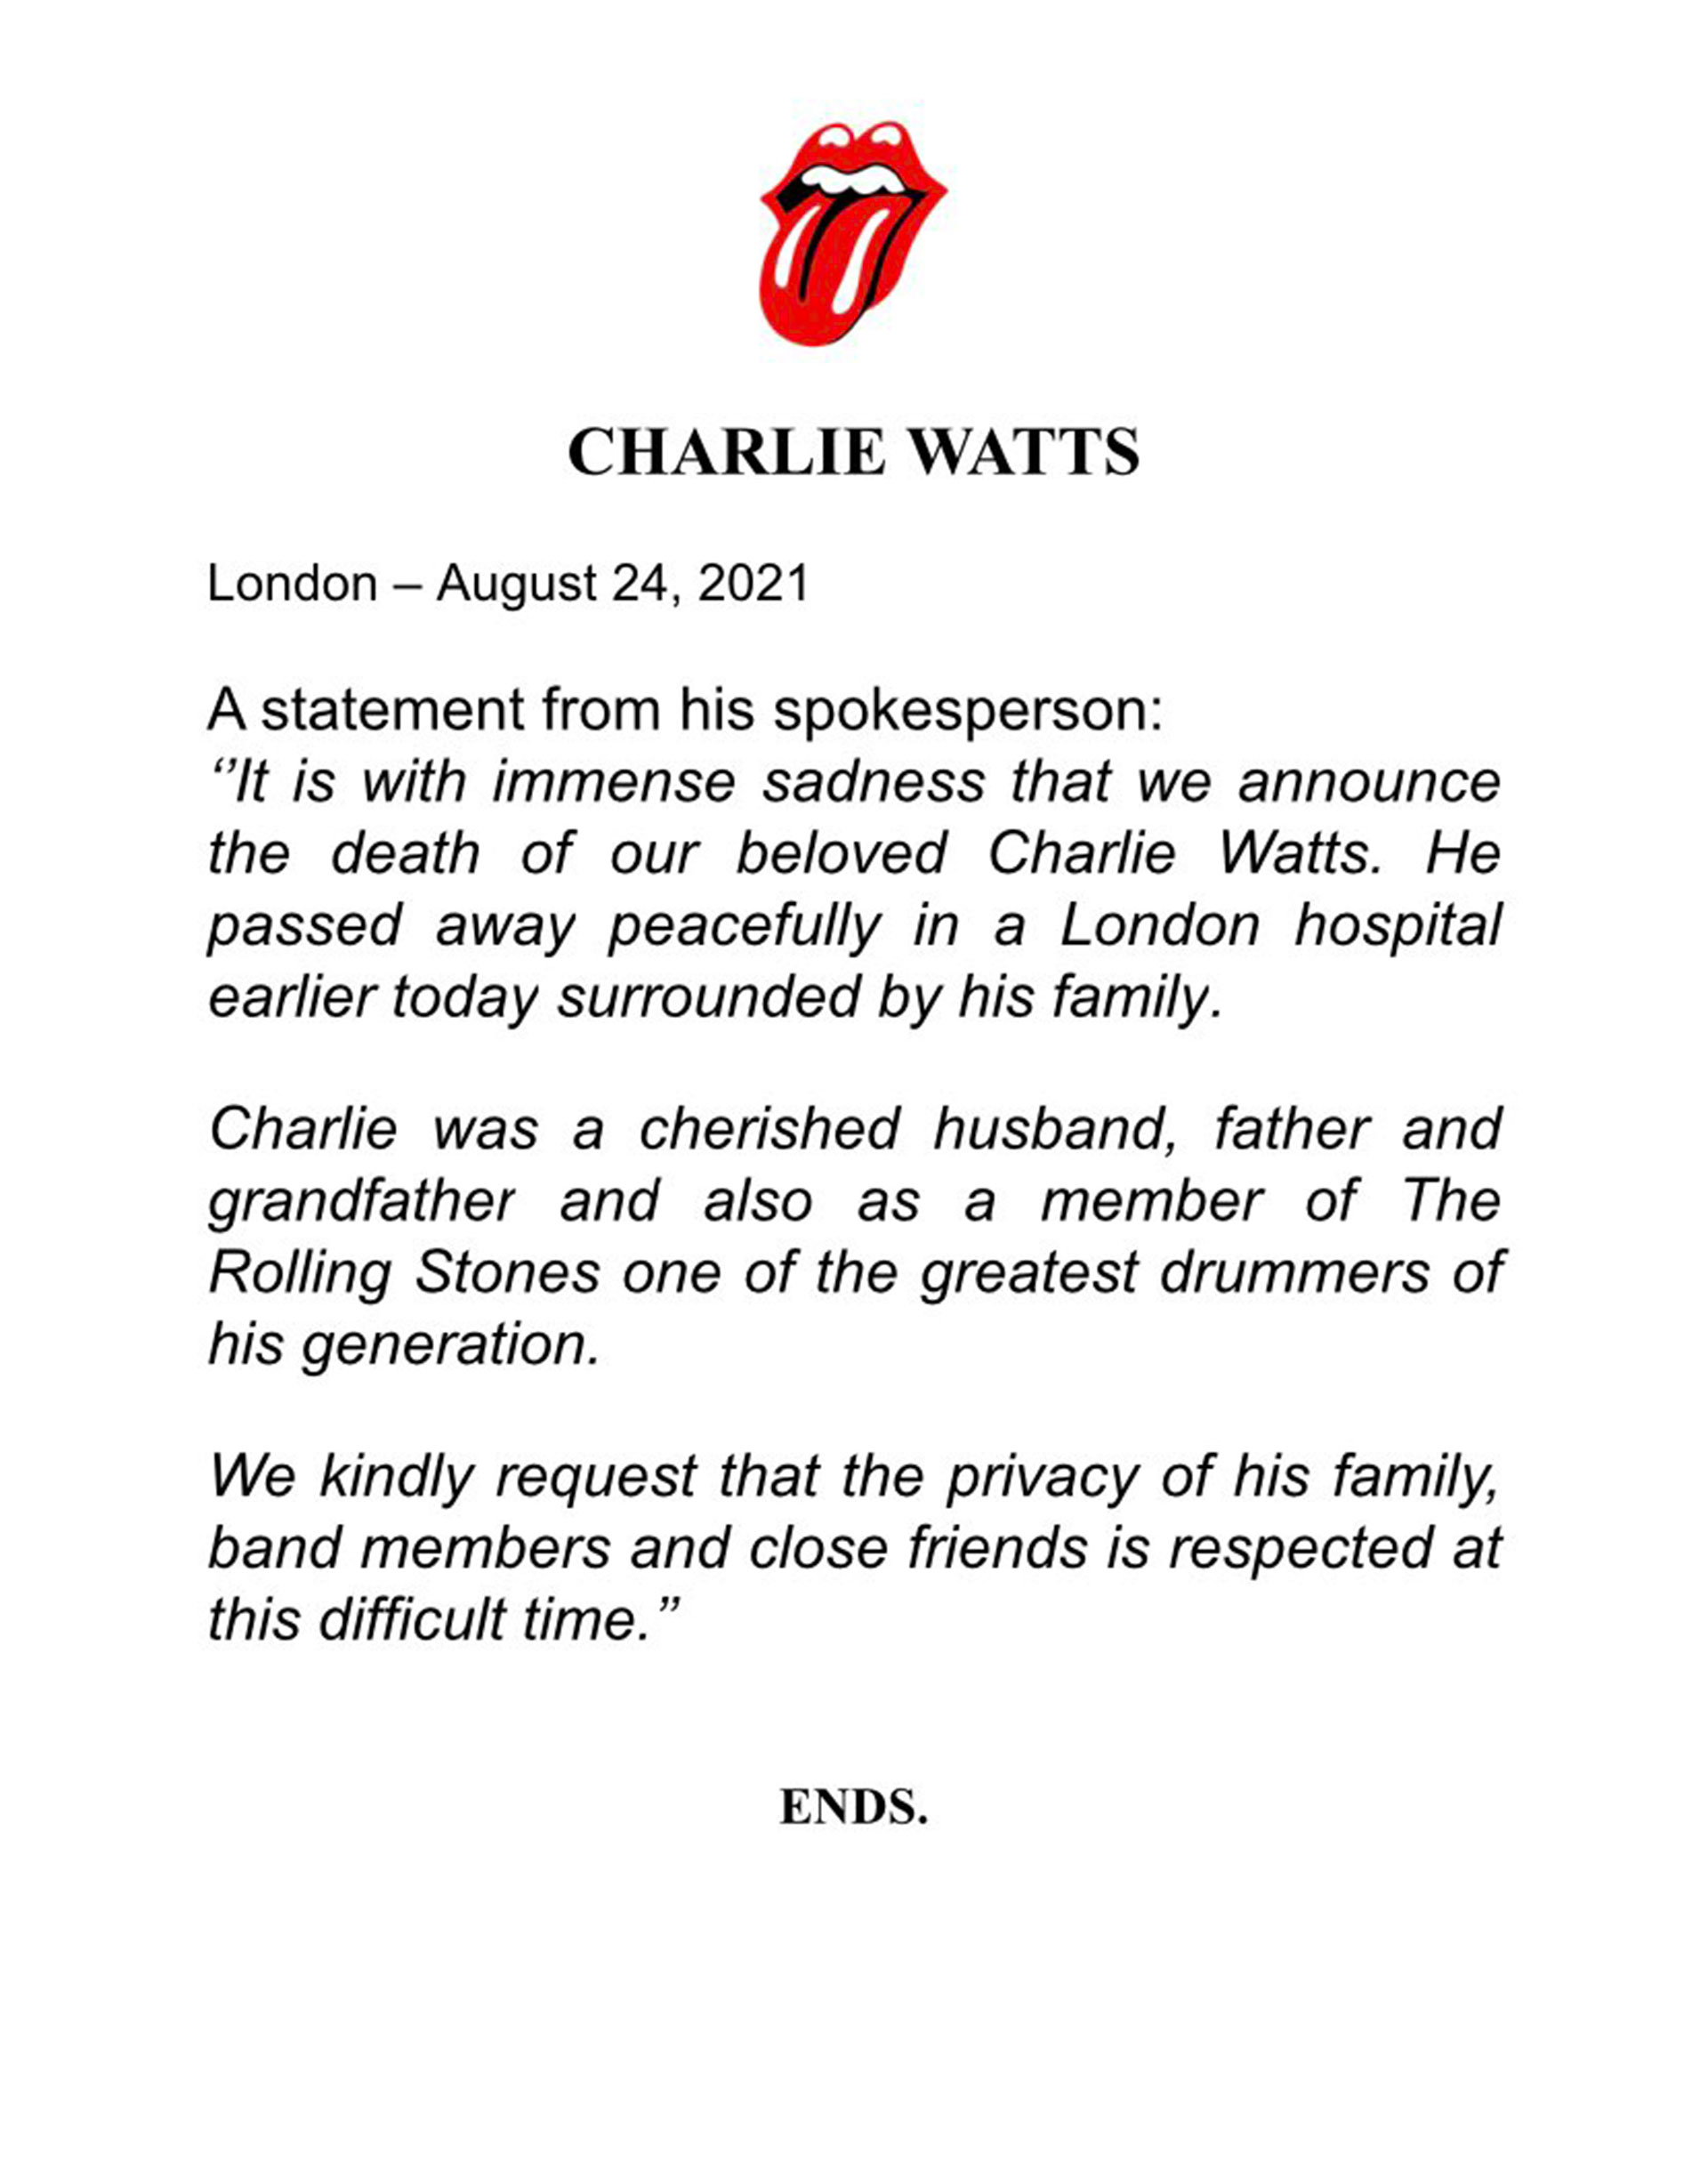 Murió Charlie Watts: así informó su agente la partida del baterista de los Rolling Stones - Infobae